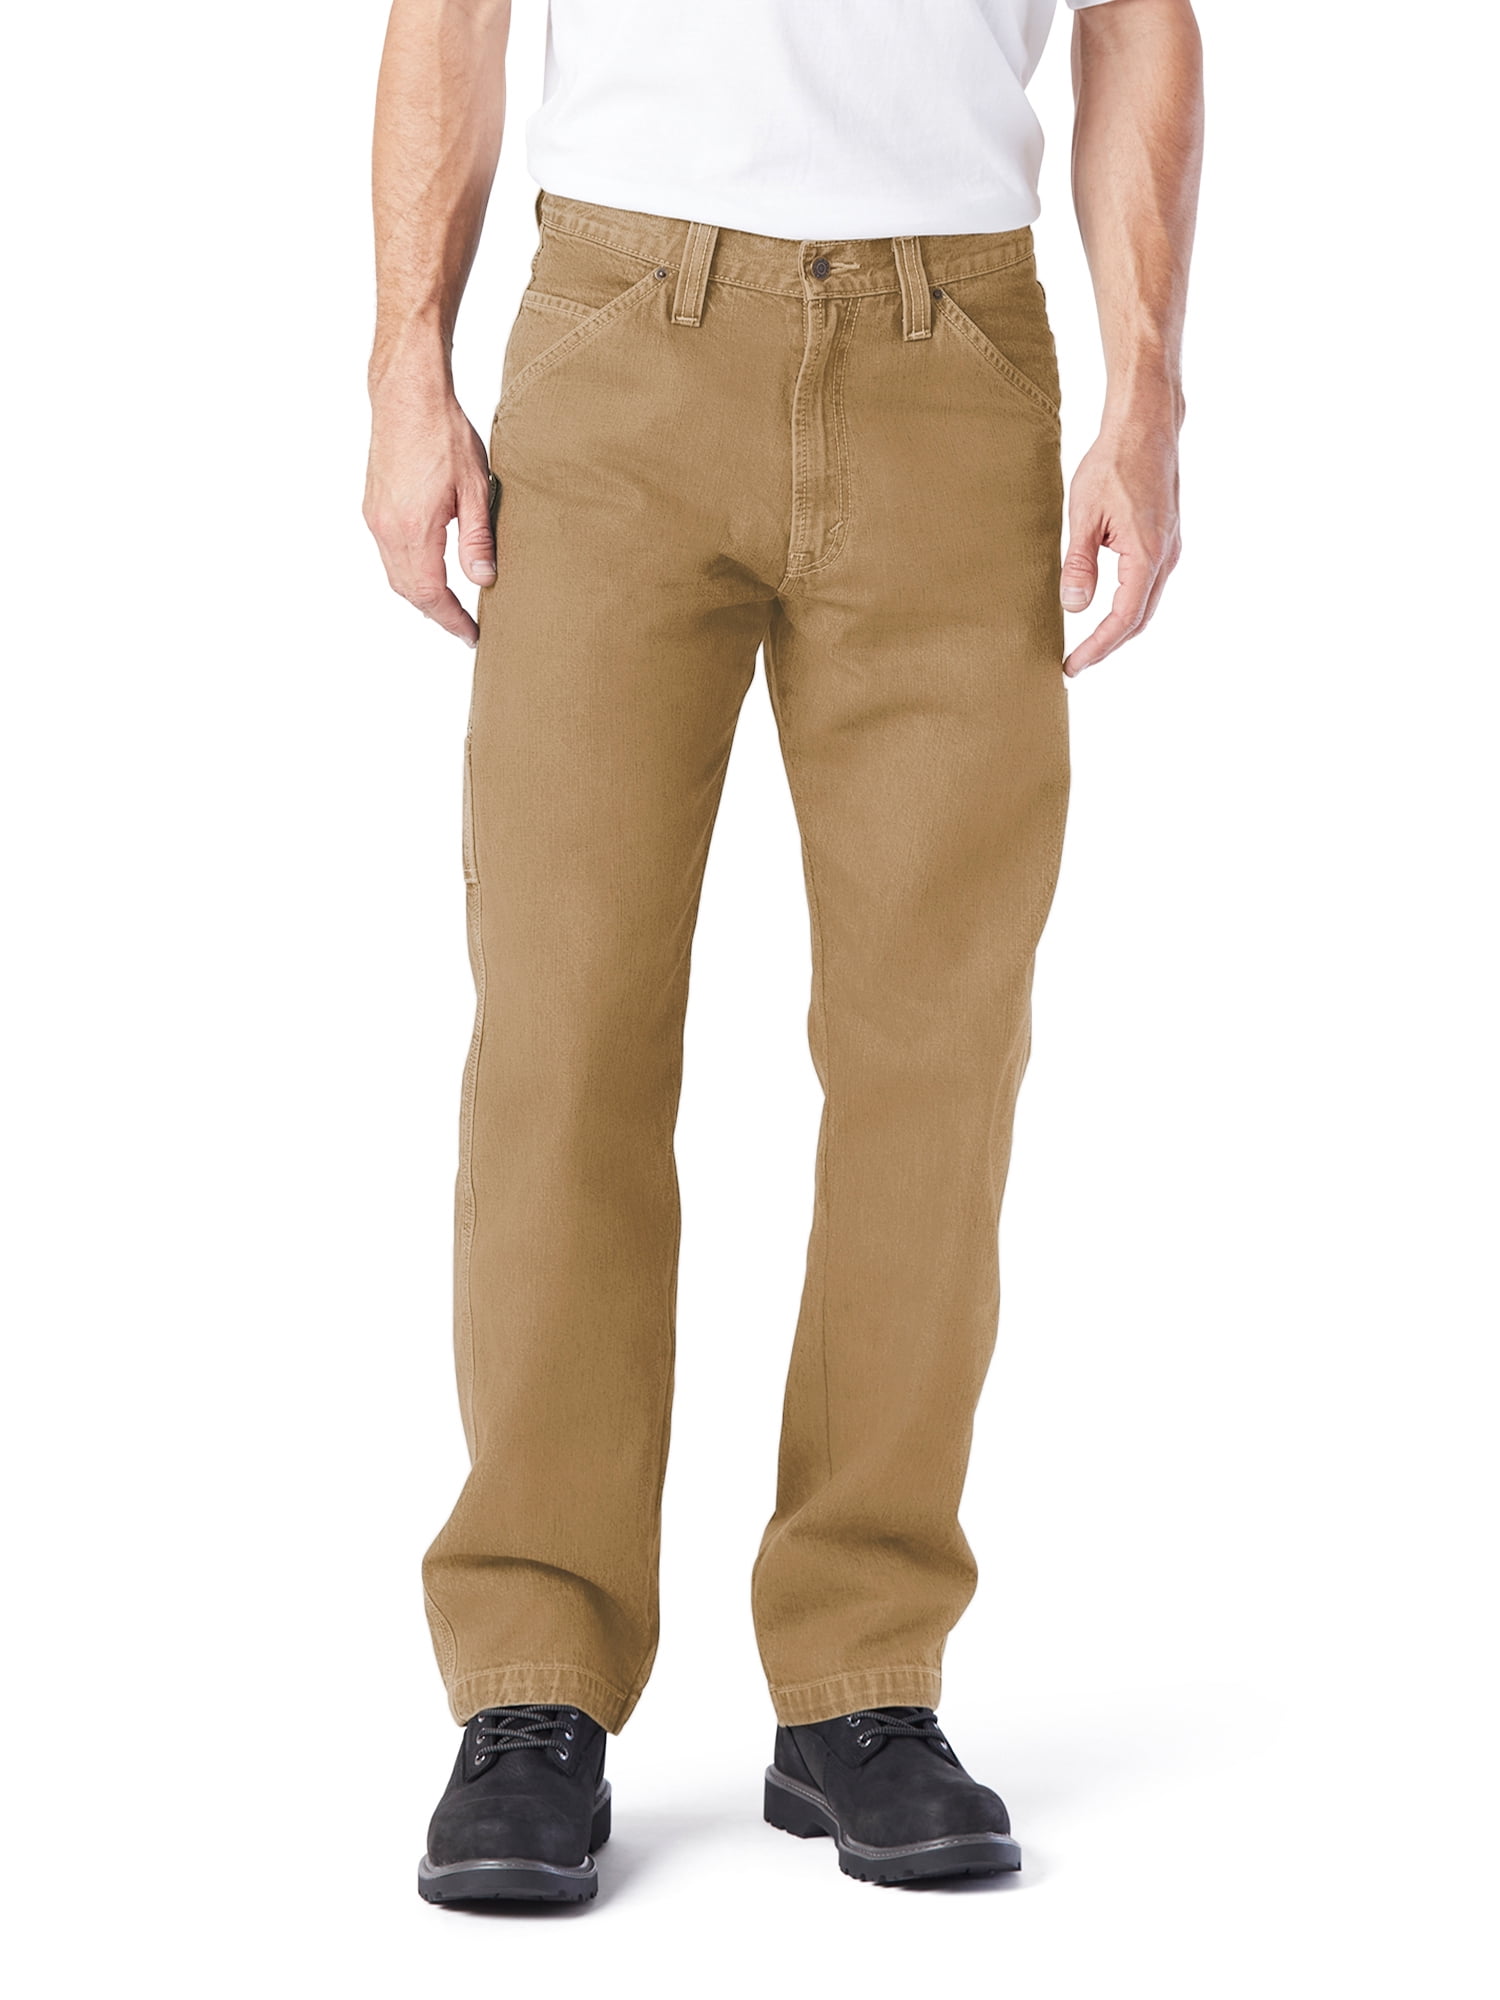 Amazon.com: Dickies Carpenter Pants For Men